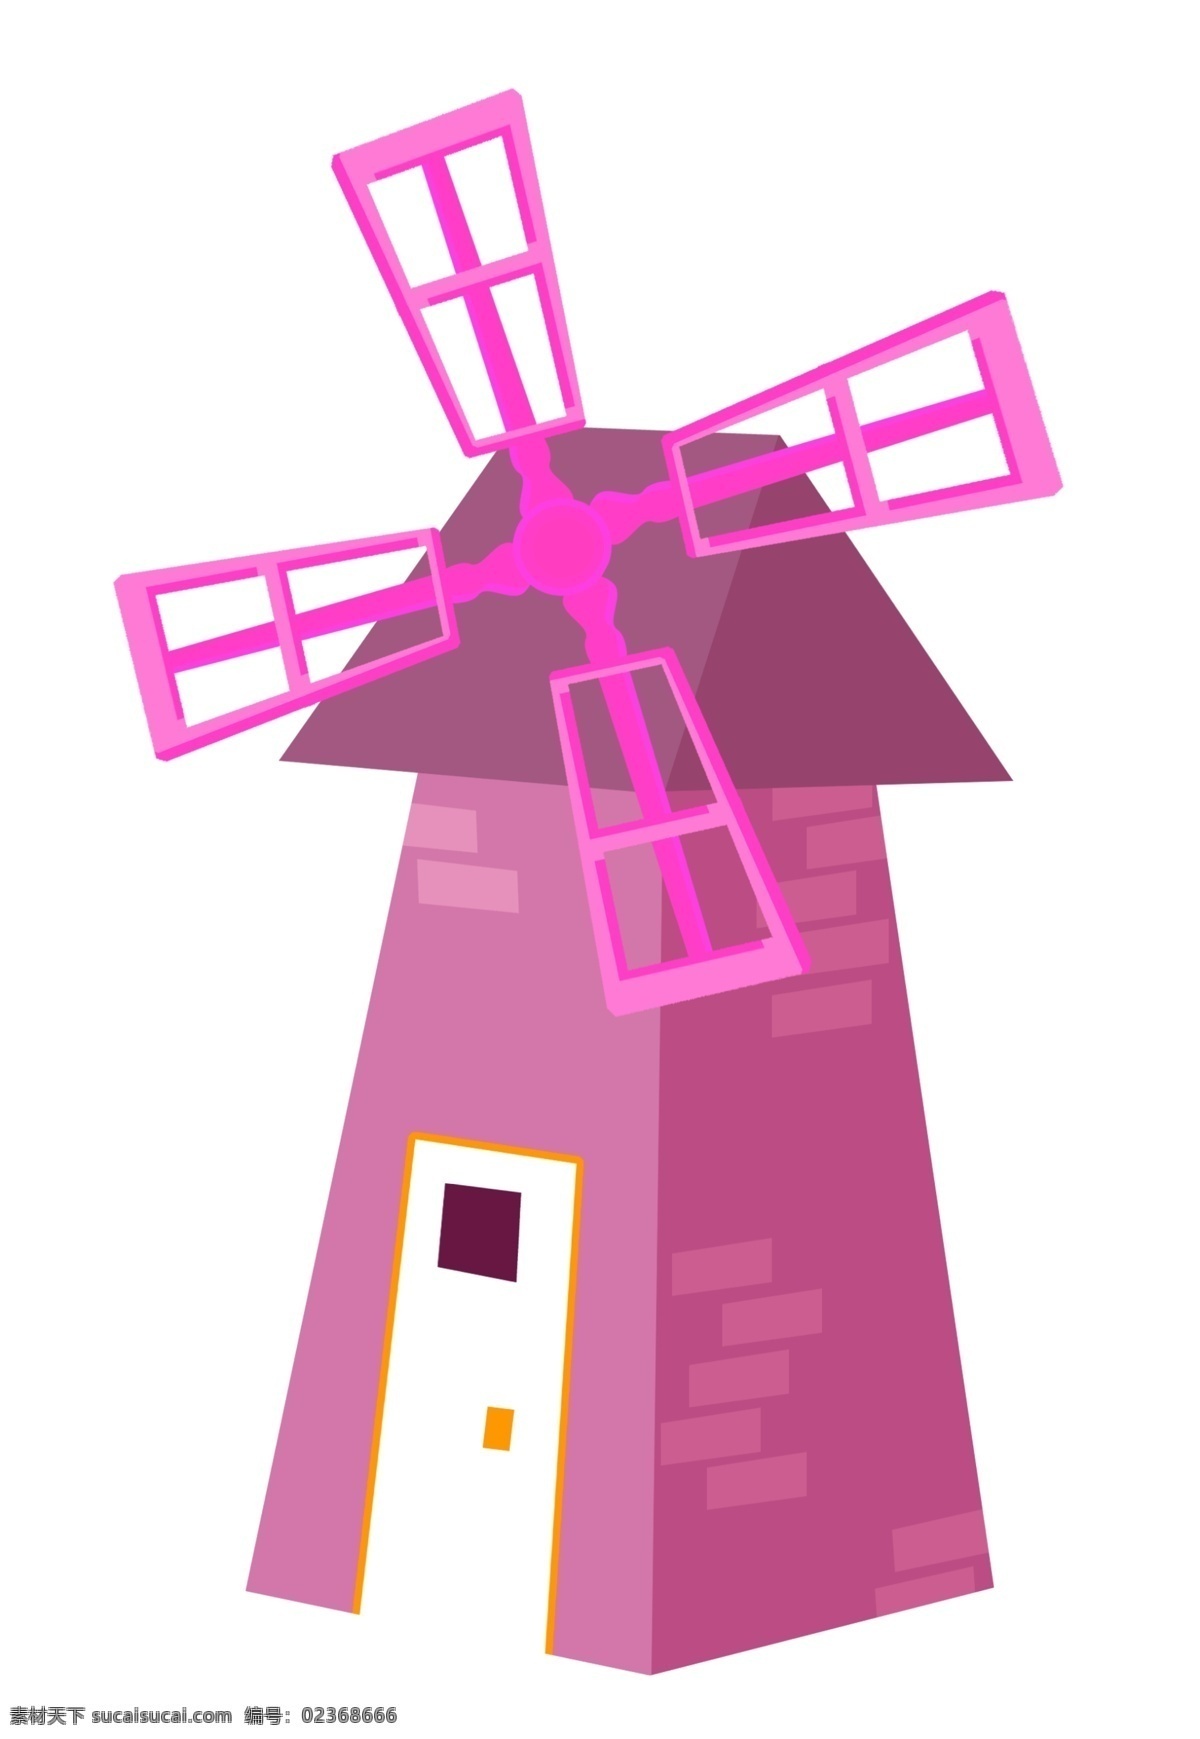 立体 风车 装饰 插画 紫色的风车 漂亮的风车 风车装饰 风车建筑 风车插画 立体风车 木头风车